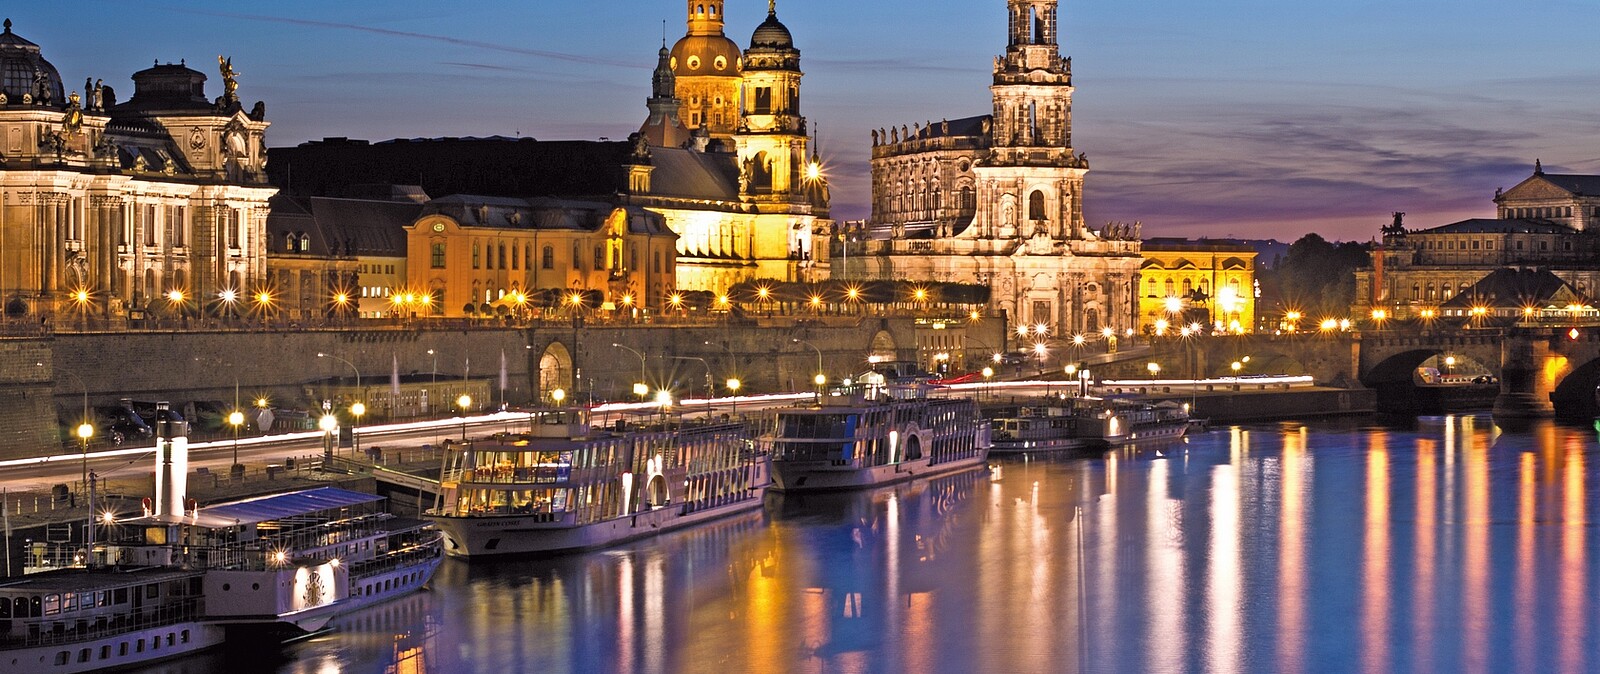 In der Dresdner Altstadt erwarten den Besucher auf kompakte Weise Highlights und bekannte Sehenswürdigkeiten wie die Frauenkirche, das Terrassenufer, das Albertinum und auch das Historische Grüne Gewölbe.